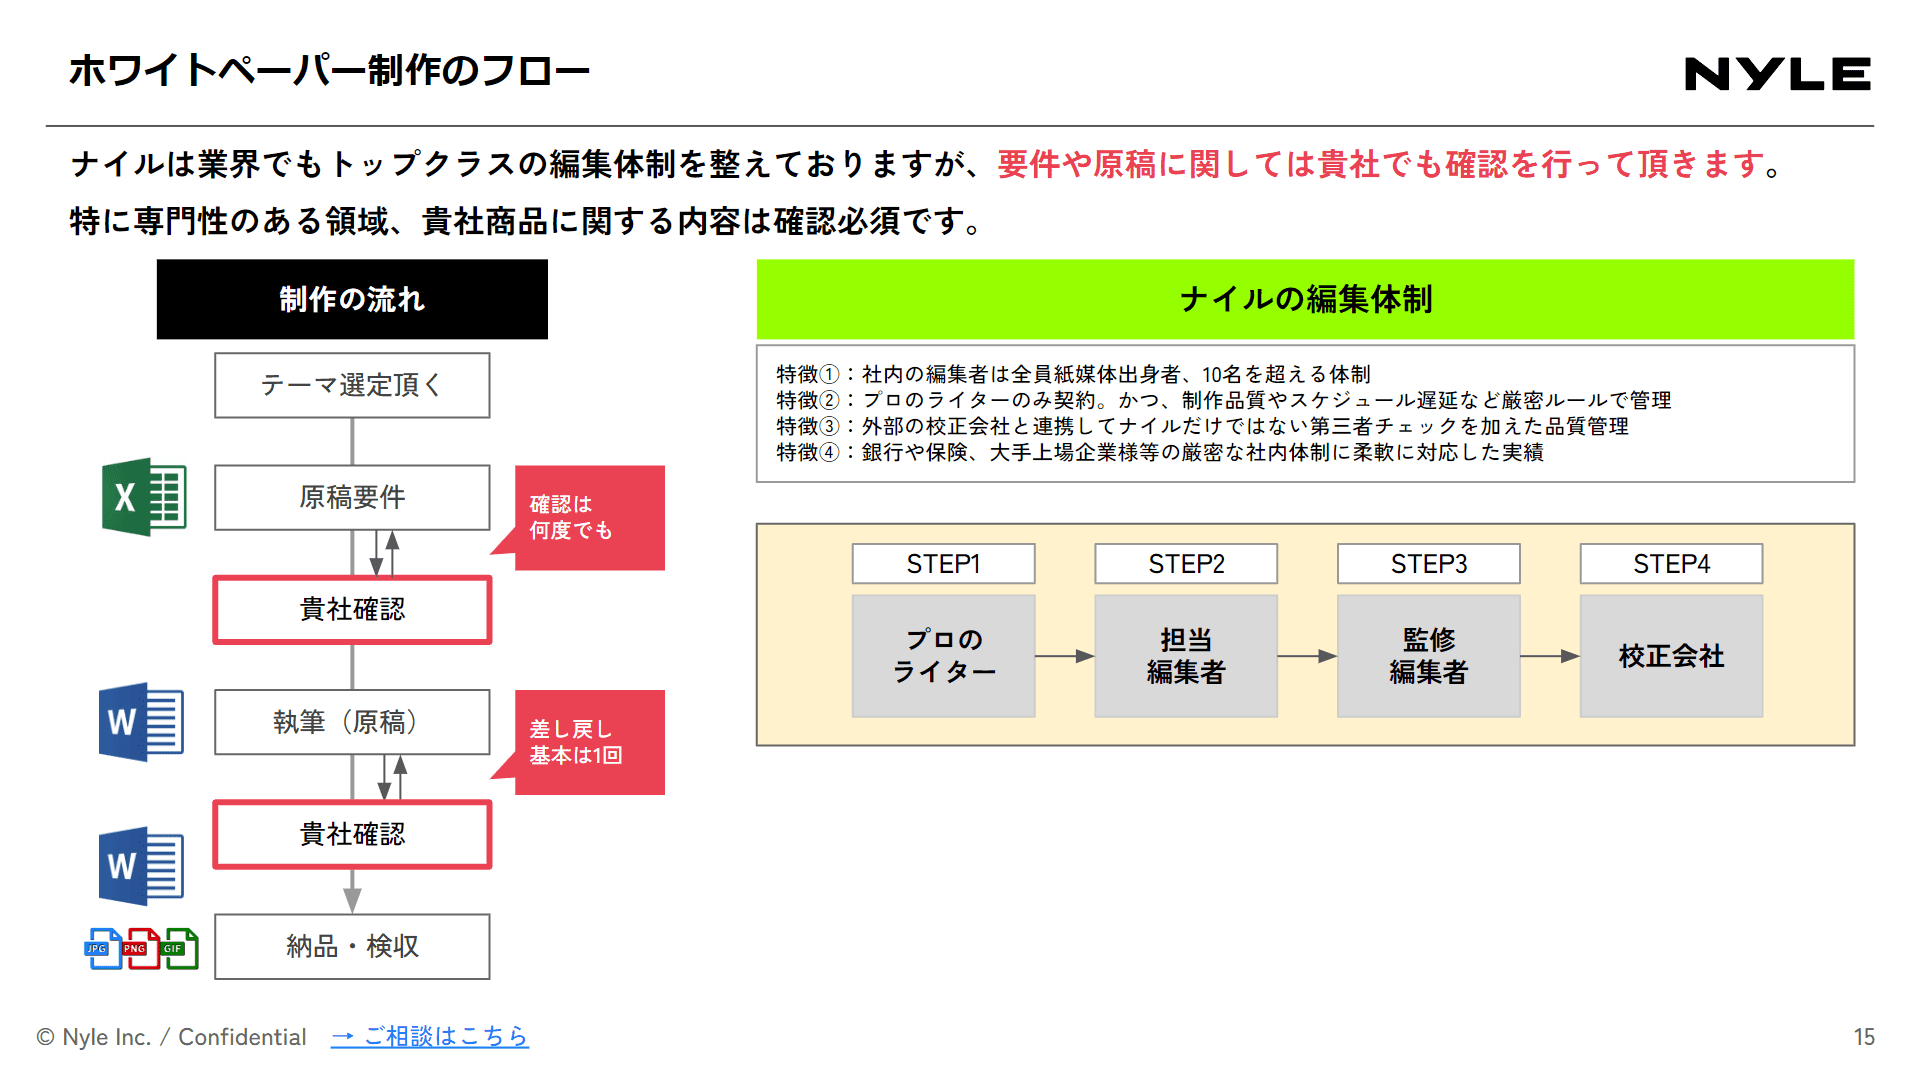 ホワイトペーパー作成代行サービス紹介資料スライドサンプル2